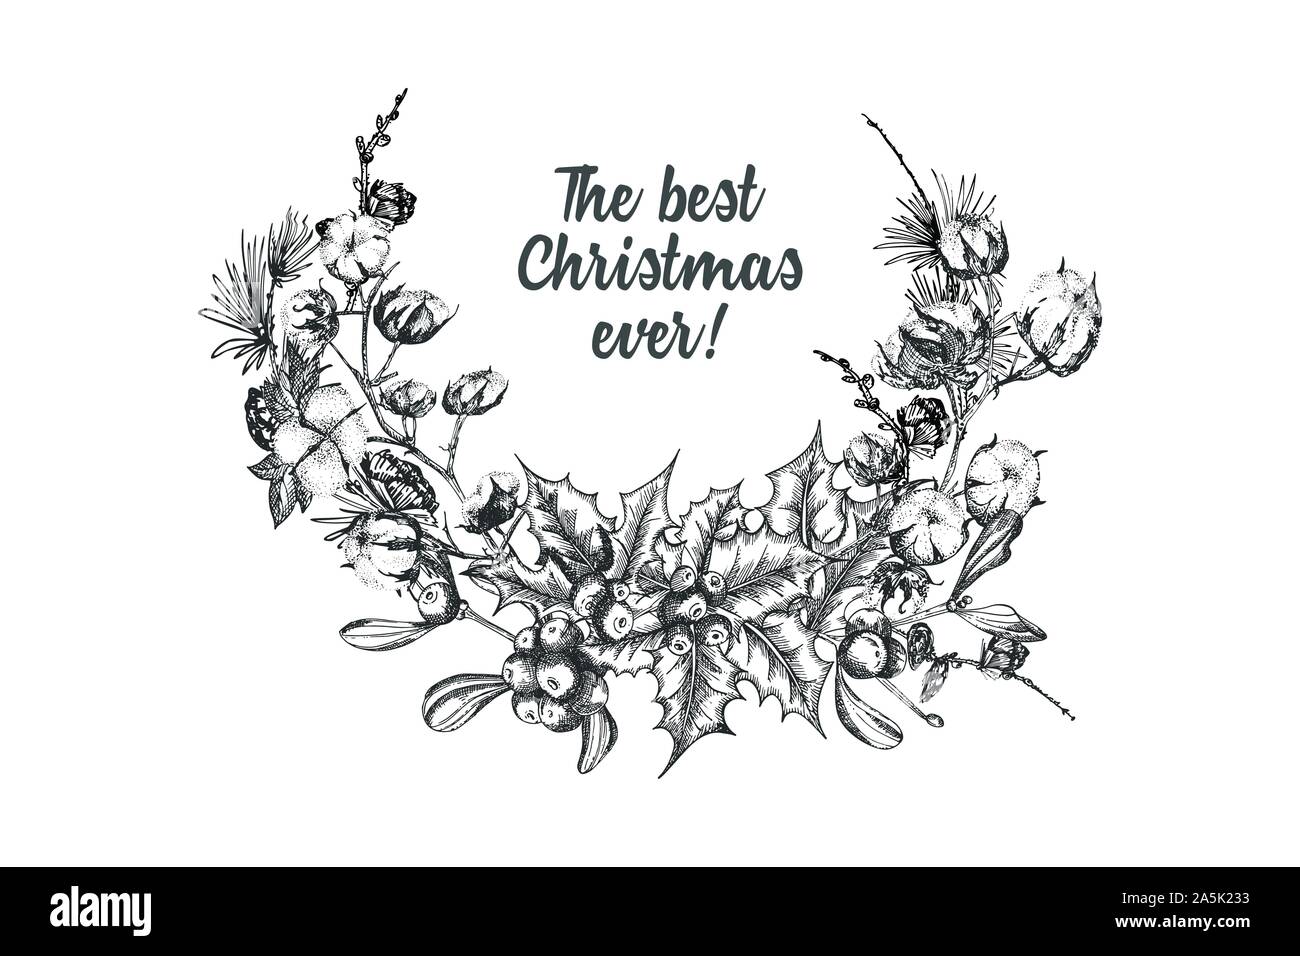 Disegnato a mano disegno botanico ghirlanda di Natale con rami delle piante. In stile vintage. Vacanza tradizionale decor. Per la progettazione della scheda festosa, invito Illustrazione Vettoriale